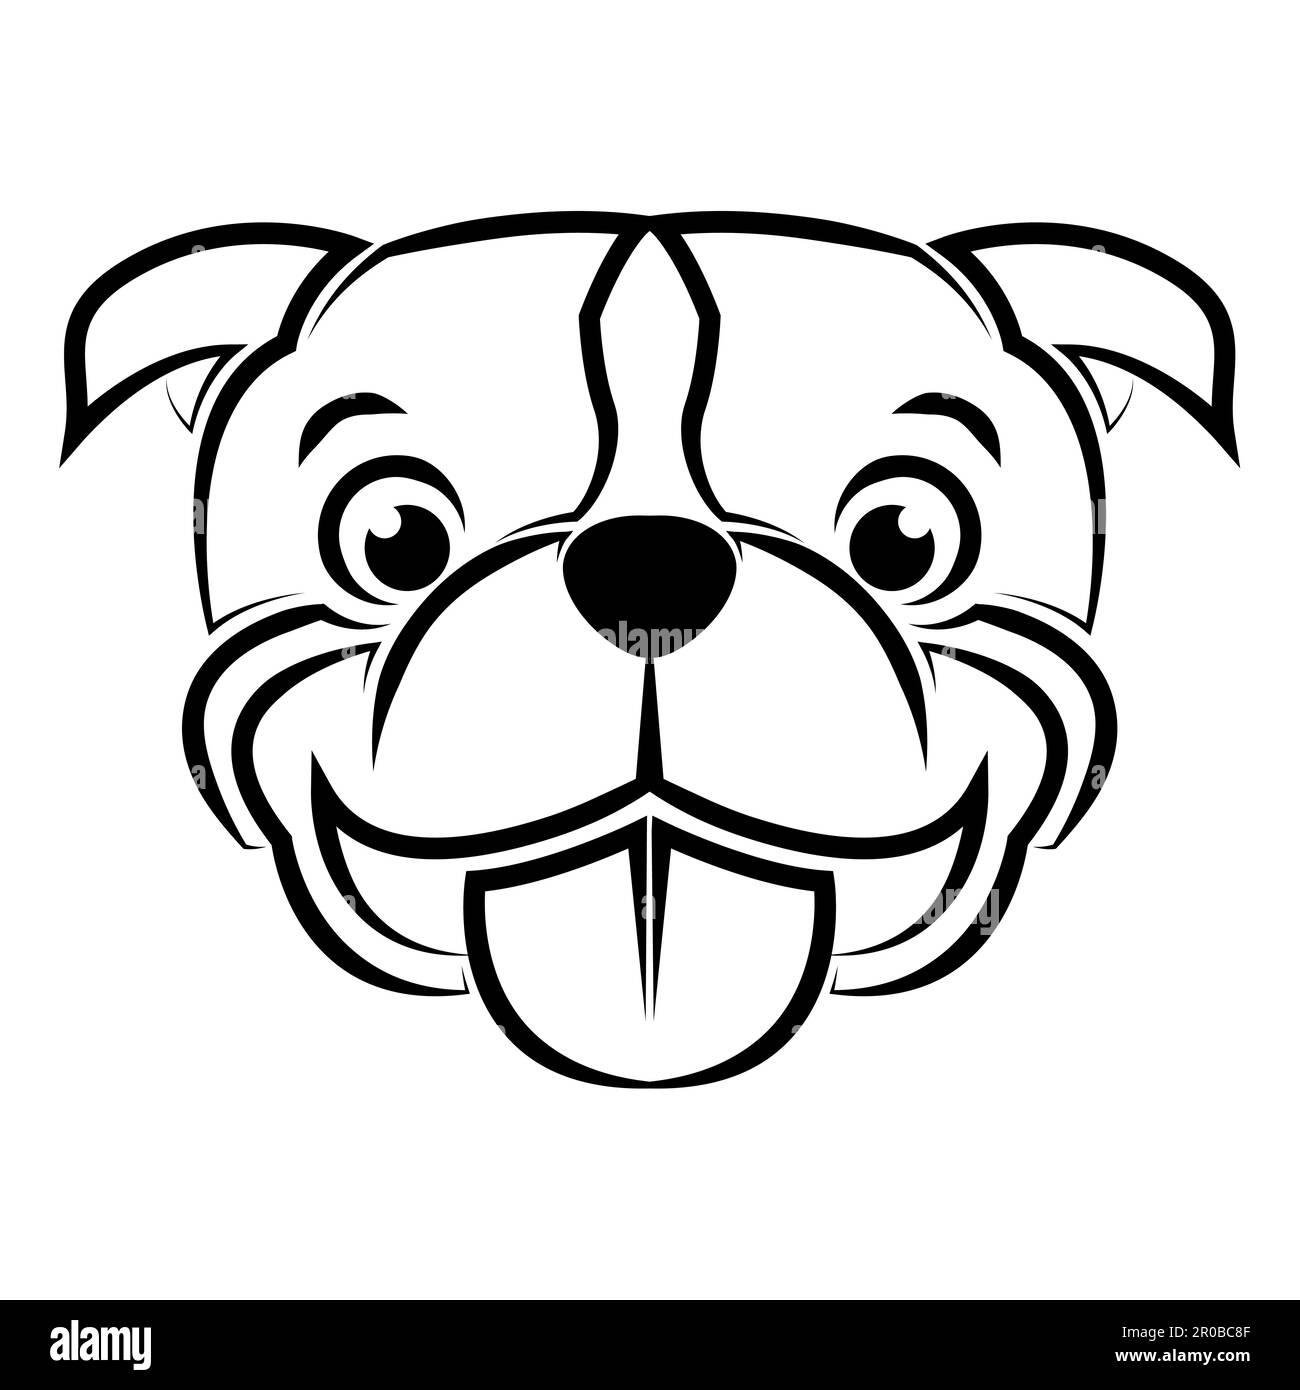 Illustration de la ligne noire et blanche de la tête de chien Pitbull. Bon usage pour symbole mascotte icône avatar tatouage T shirt design logo ou n'importe quel design Illustration de Vecteur